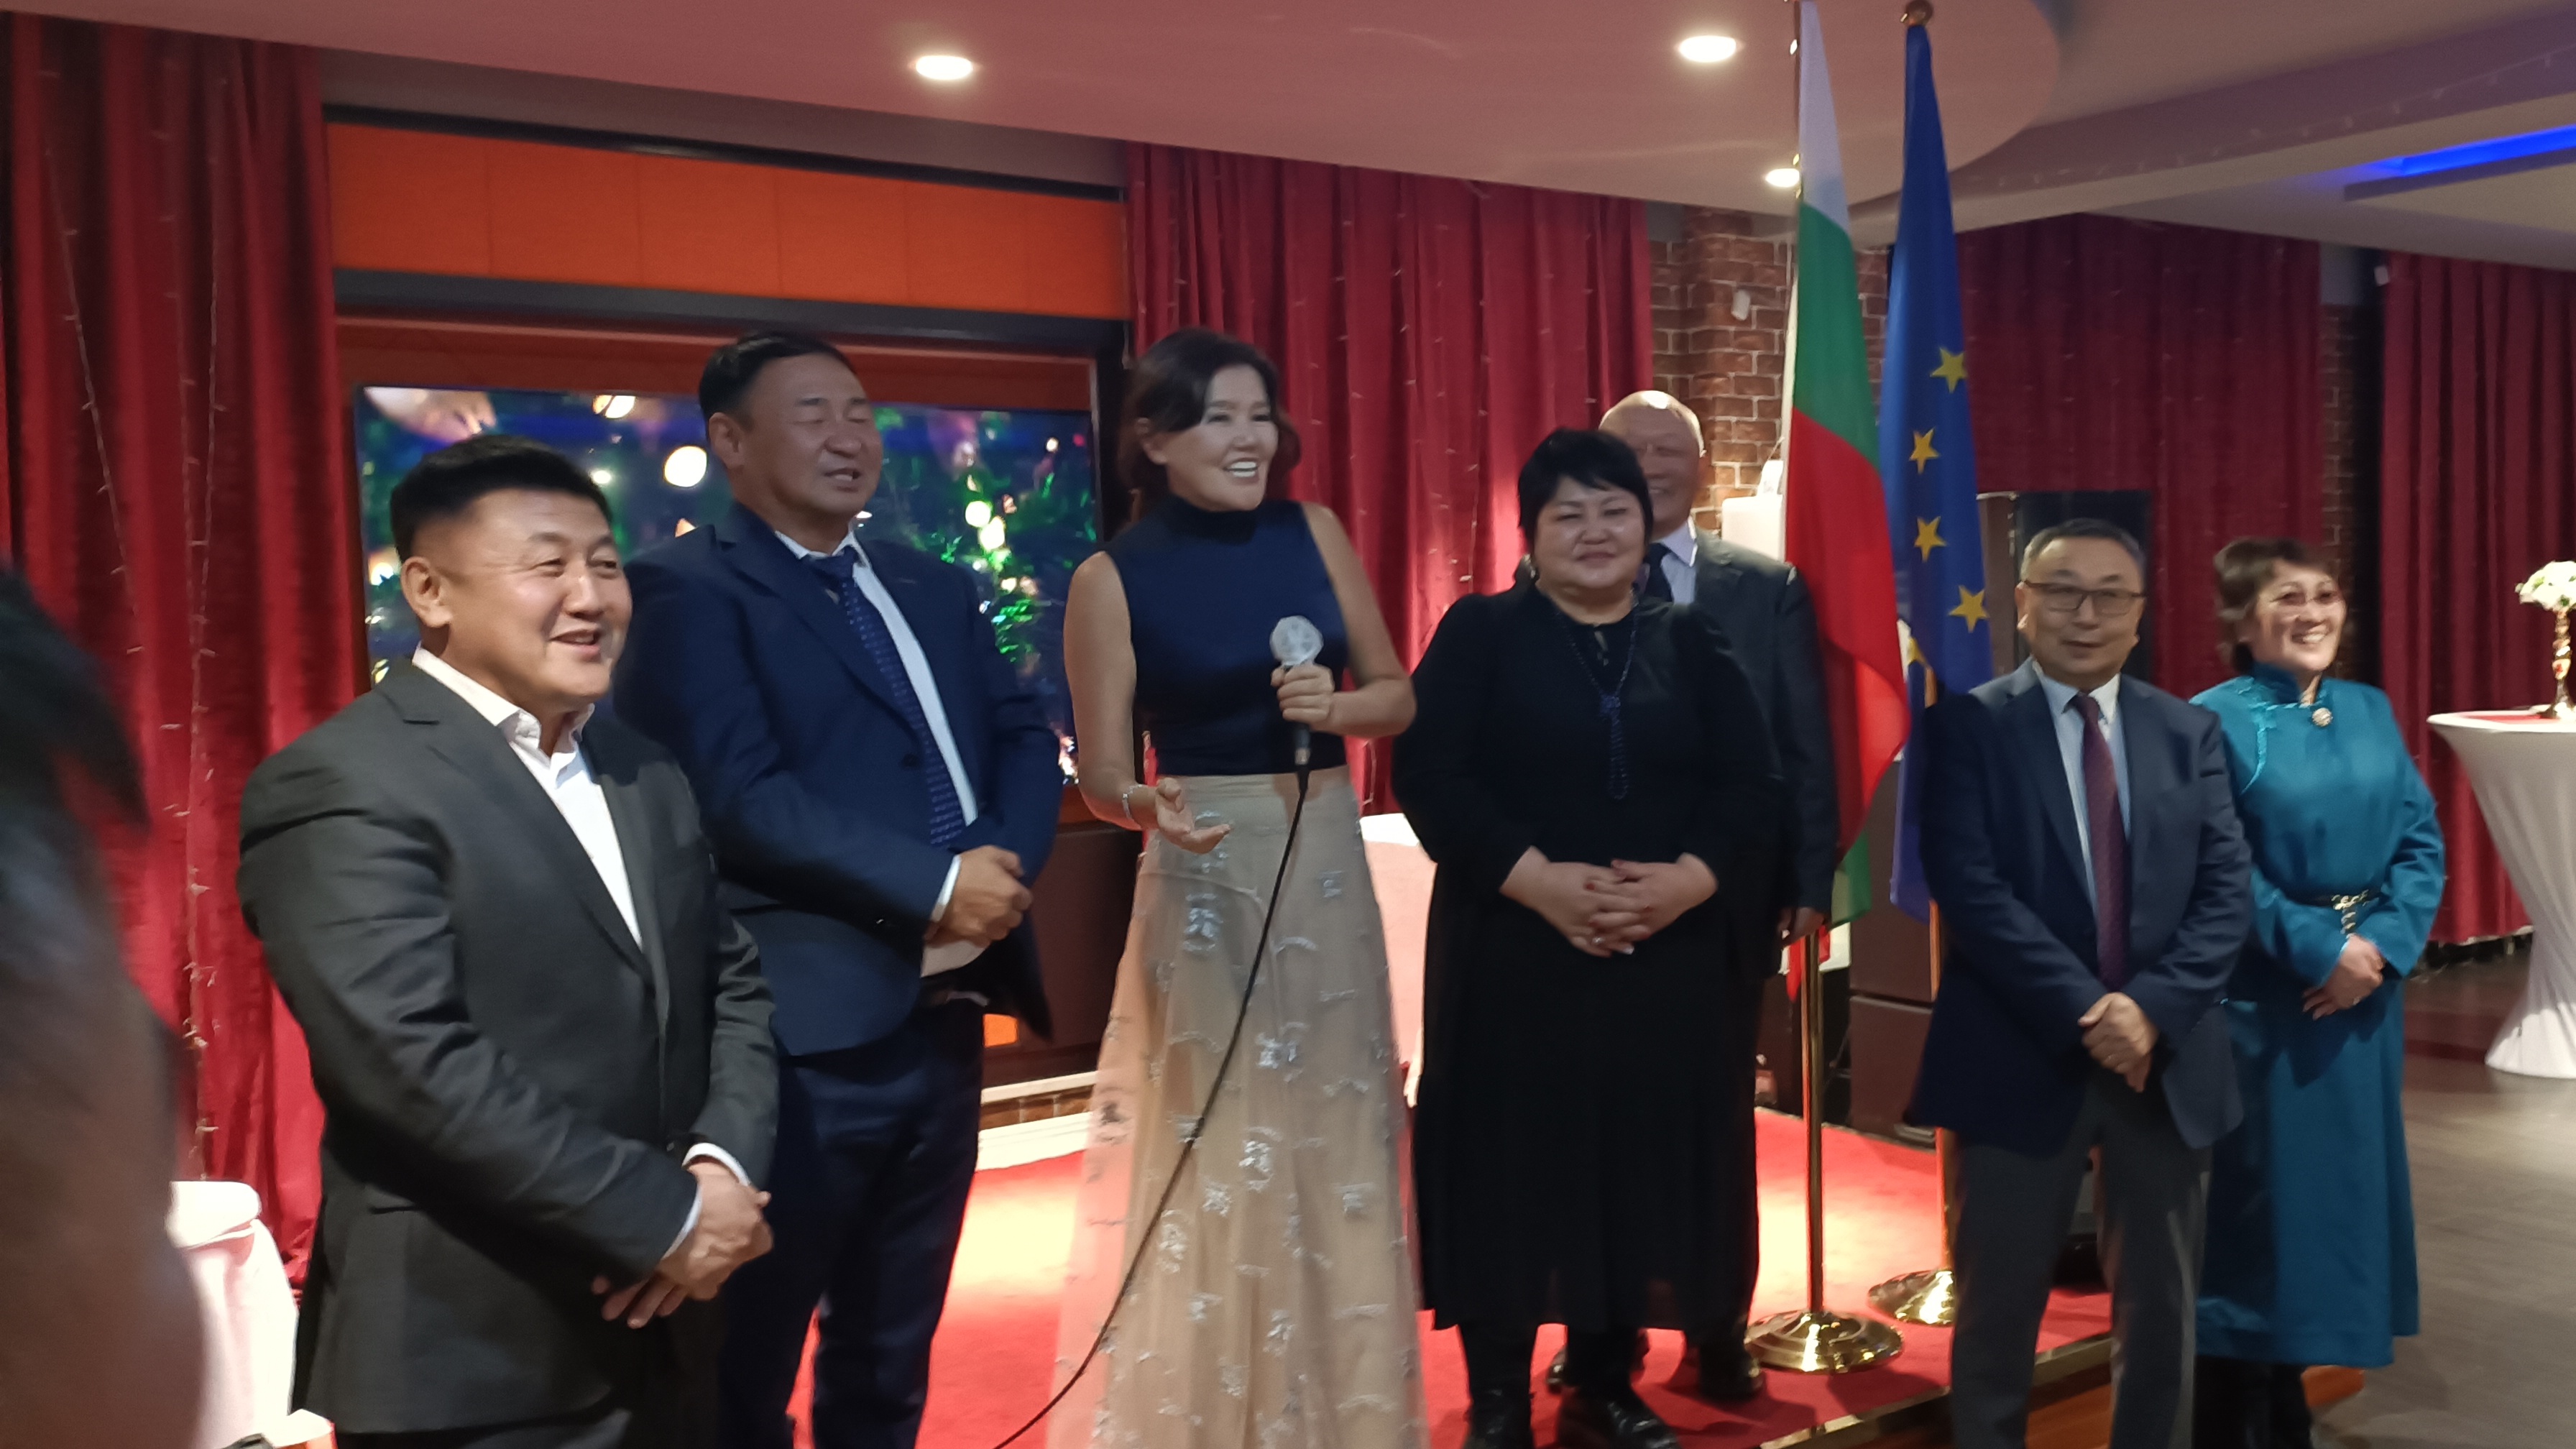 Посолството на Р България в Улан Батор организира и проведе тържествен новогодишен прием